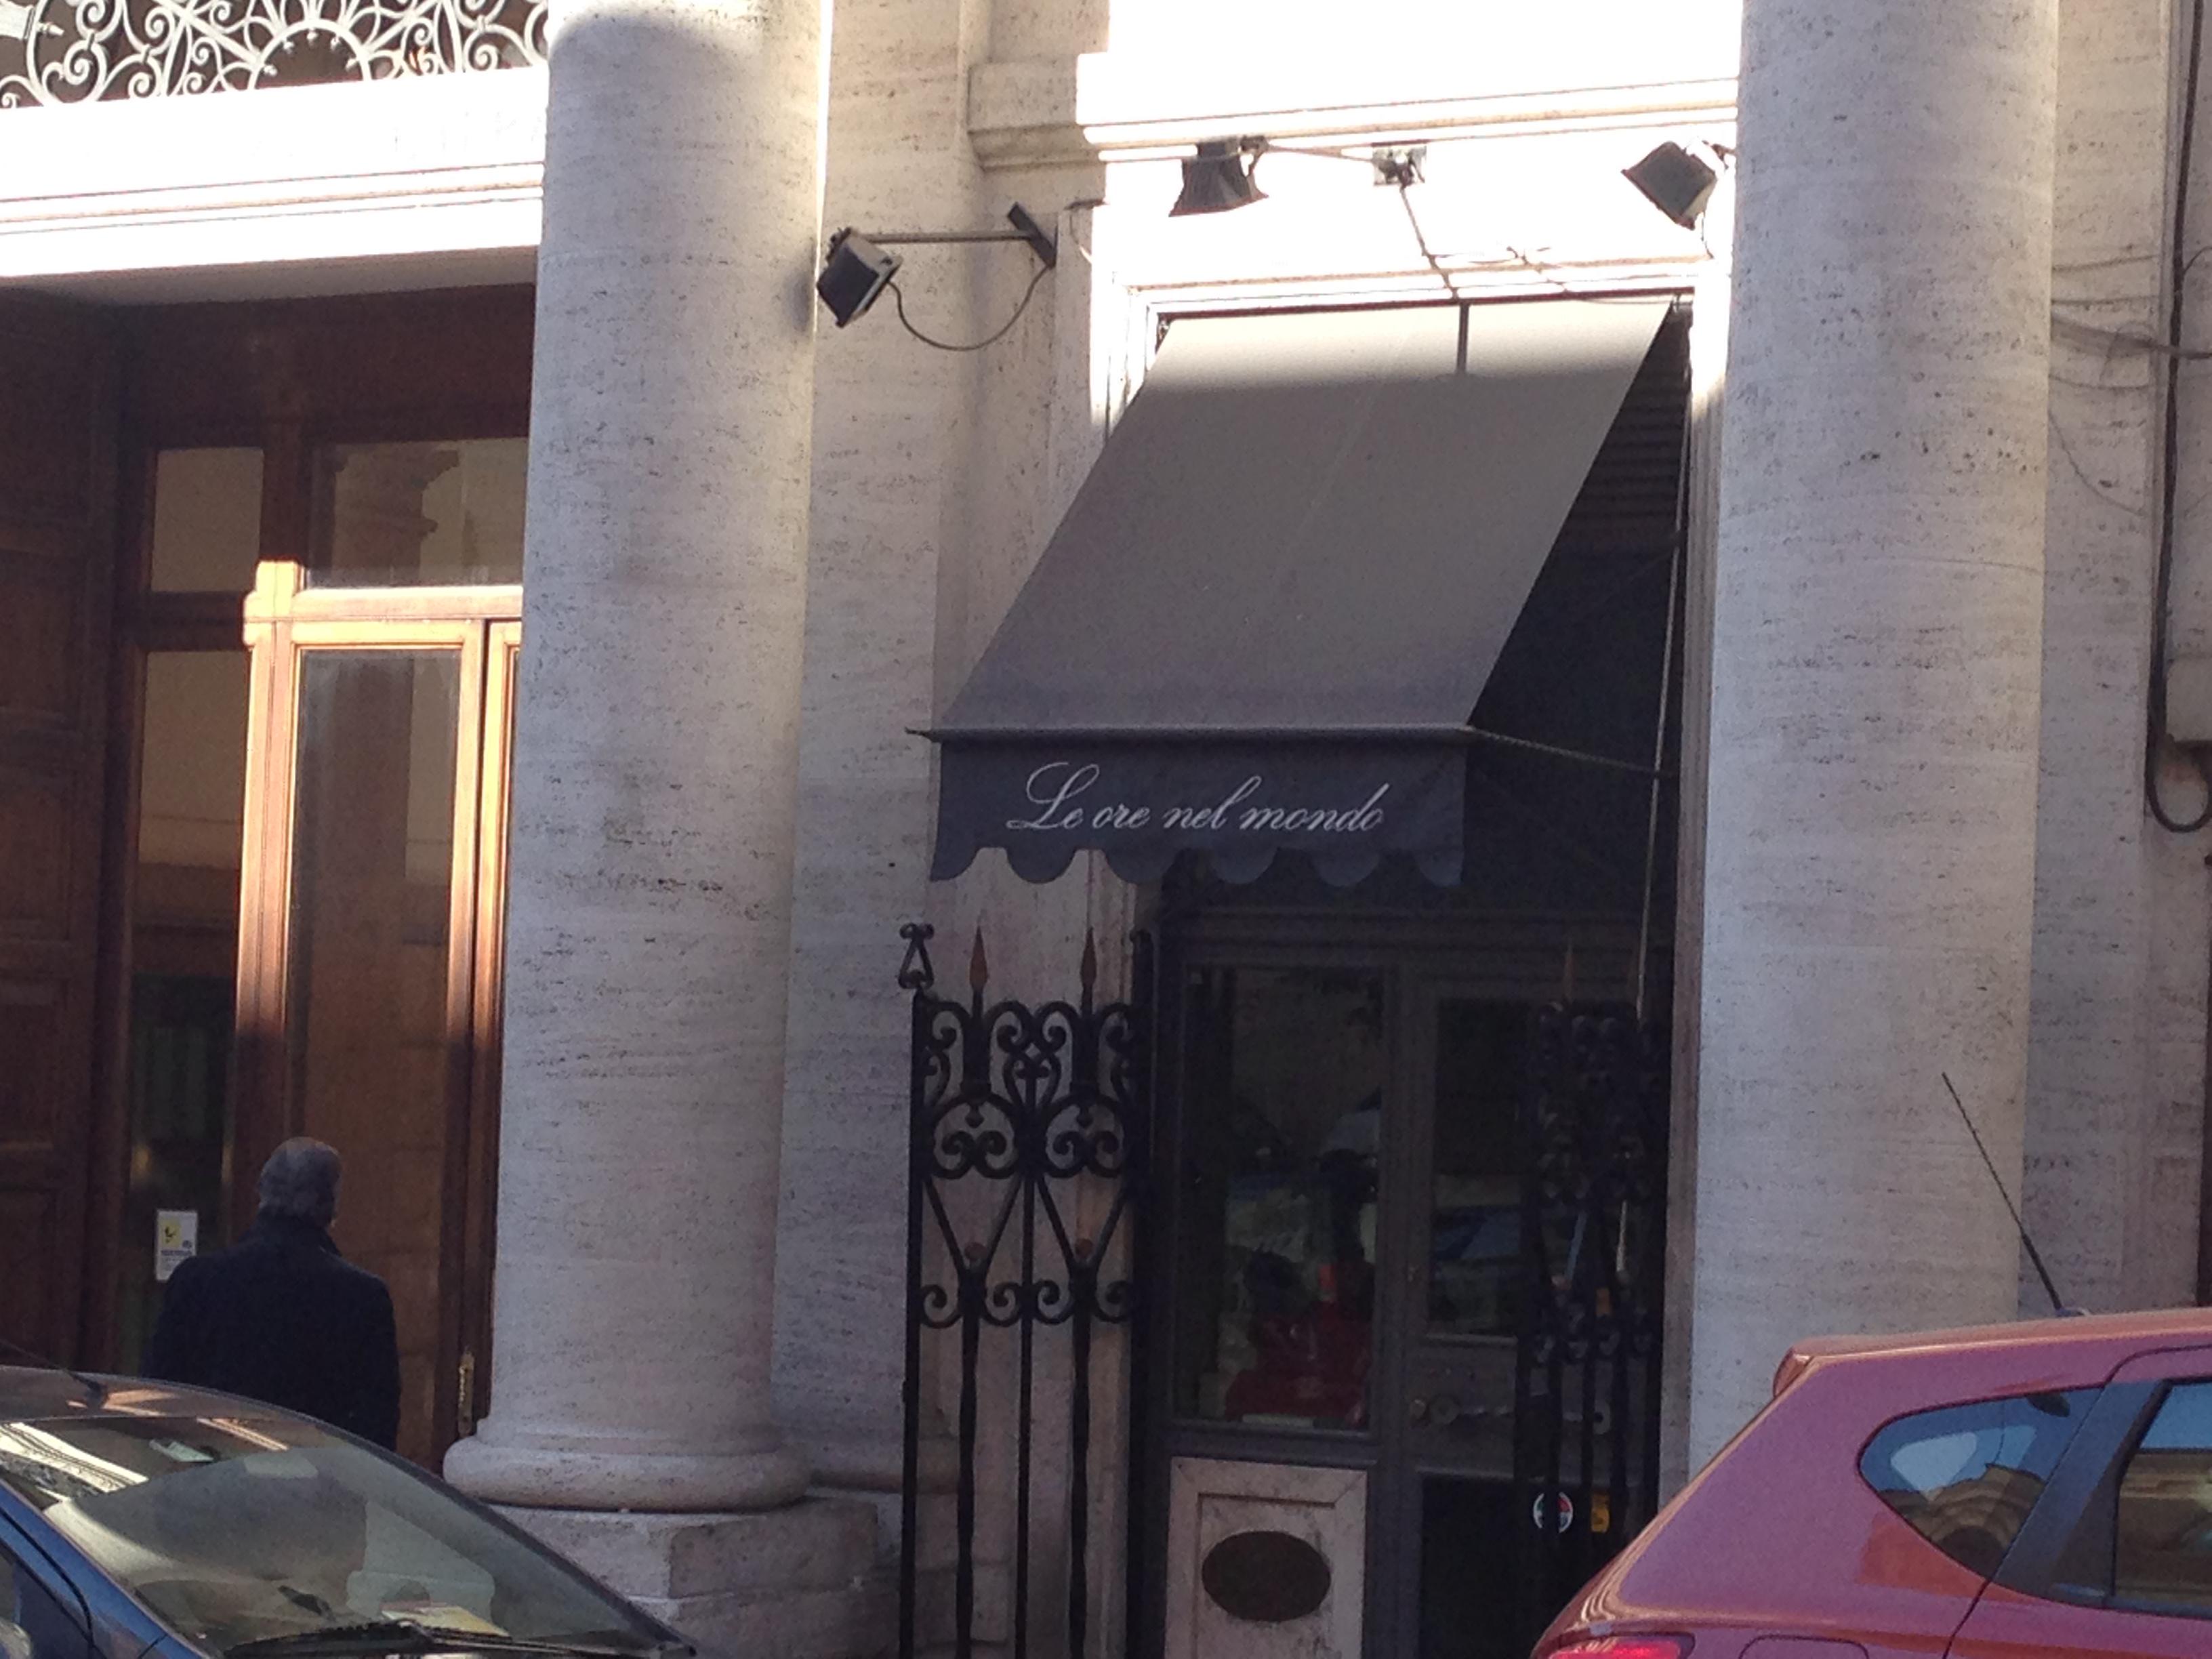 Il negozio di orologi 'Le ore del mondo' a via Barberini (foto Adnkronos)